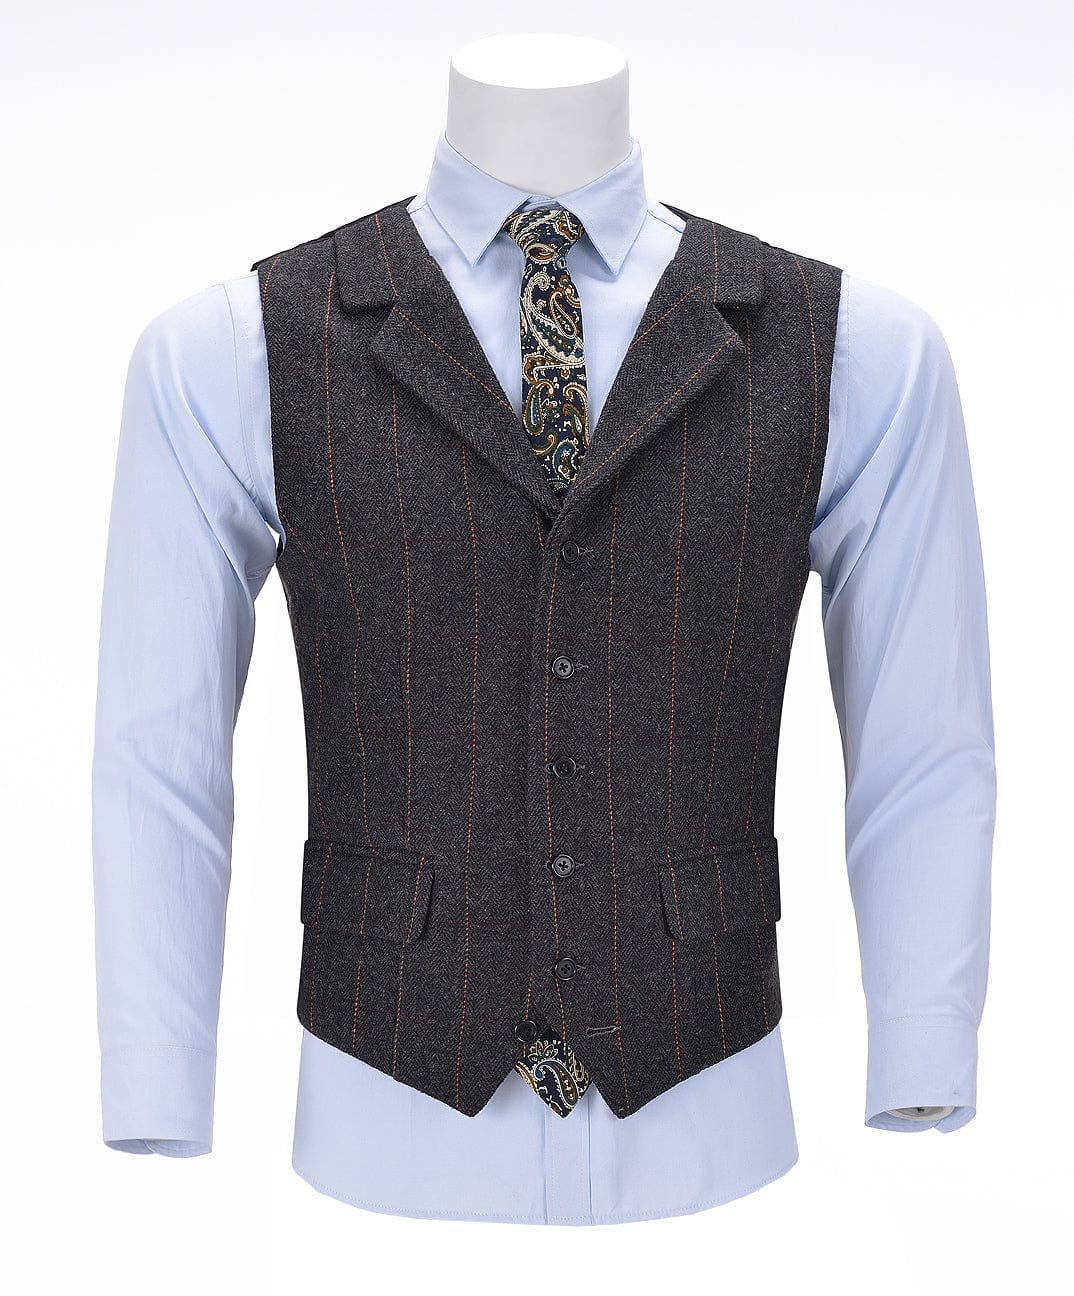 aesido Black Casual Men's Suit Vest Plaid Notch Lapel Waistcoat